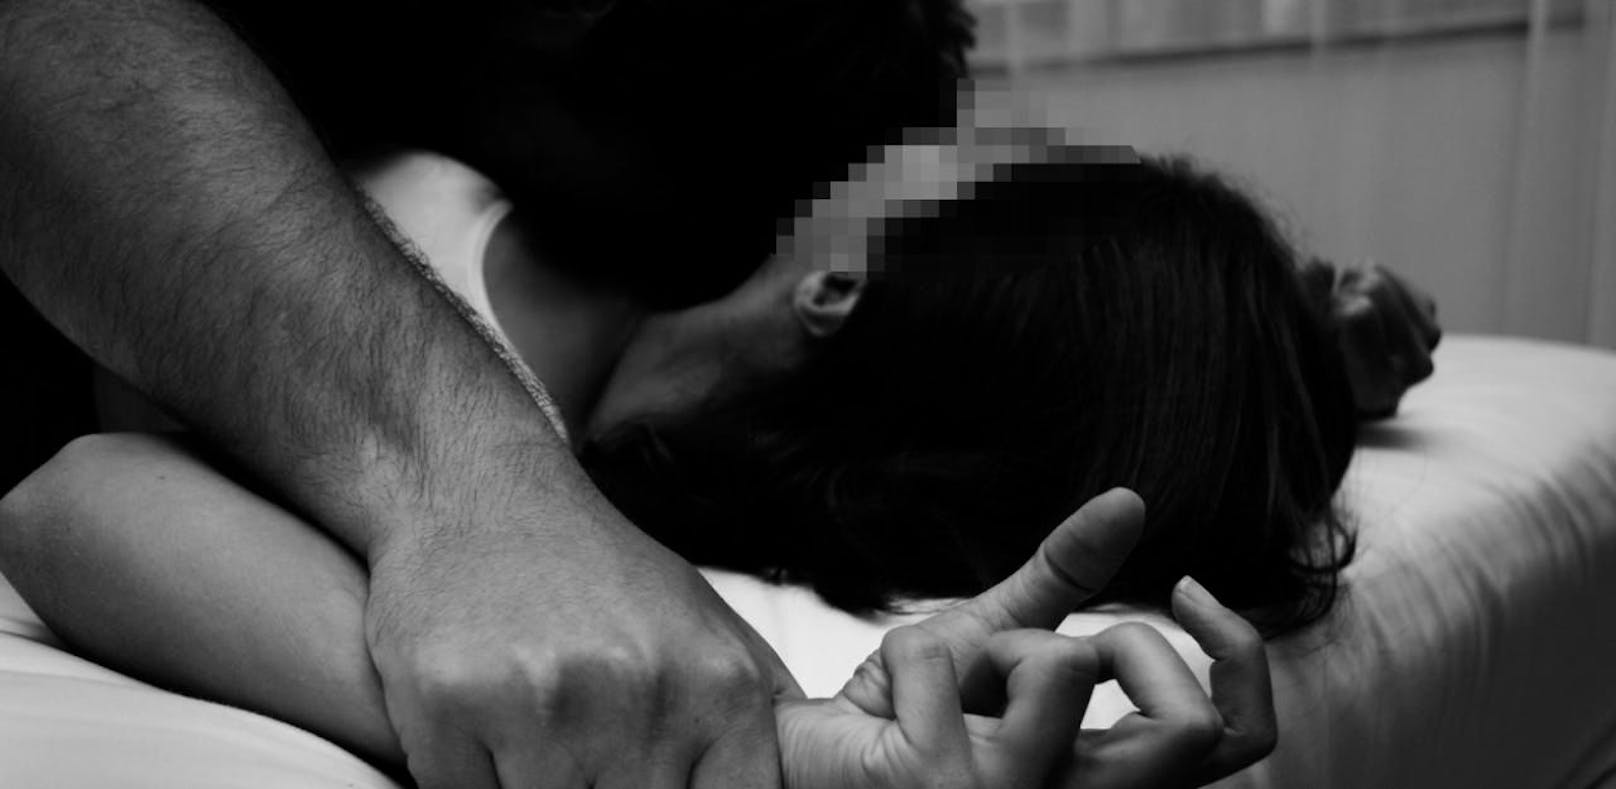 Die 39-Jährige wurde von ihrer Internet-Bekanntschaft vergewaltigt